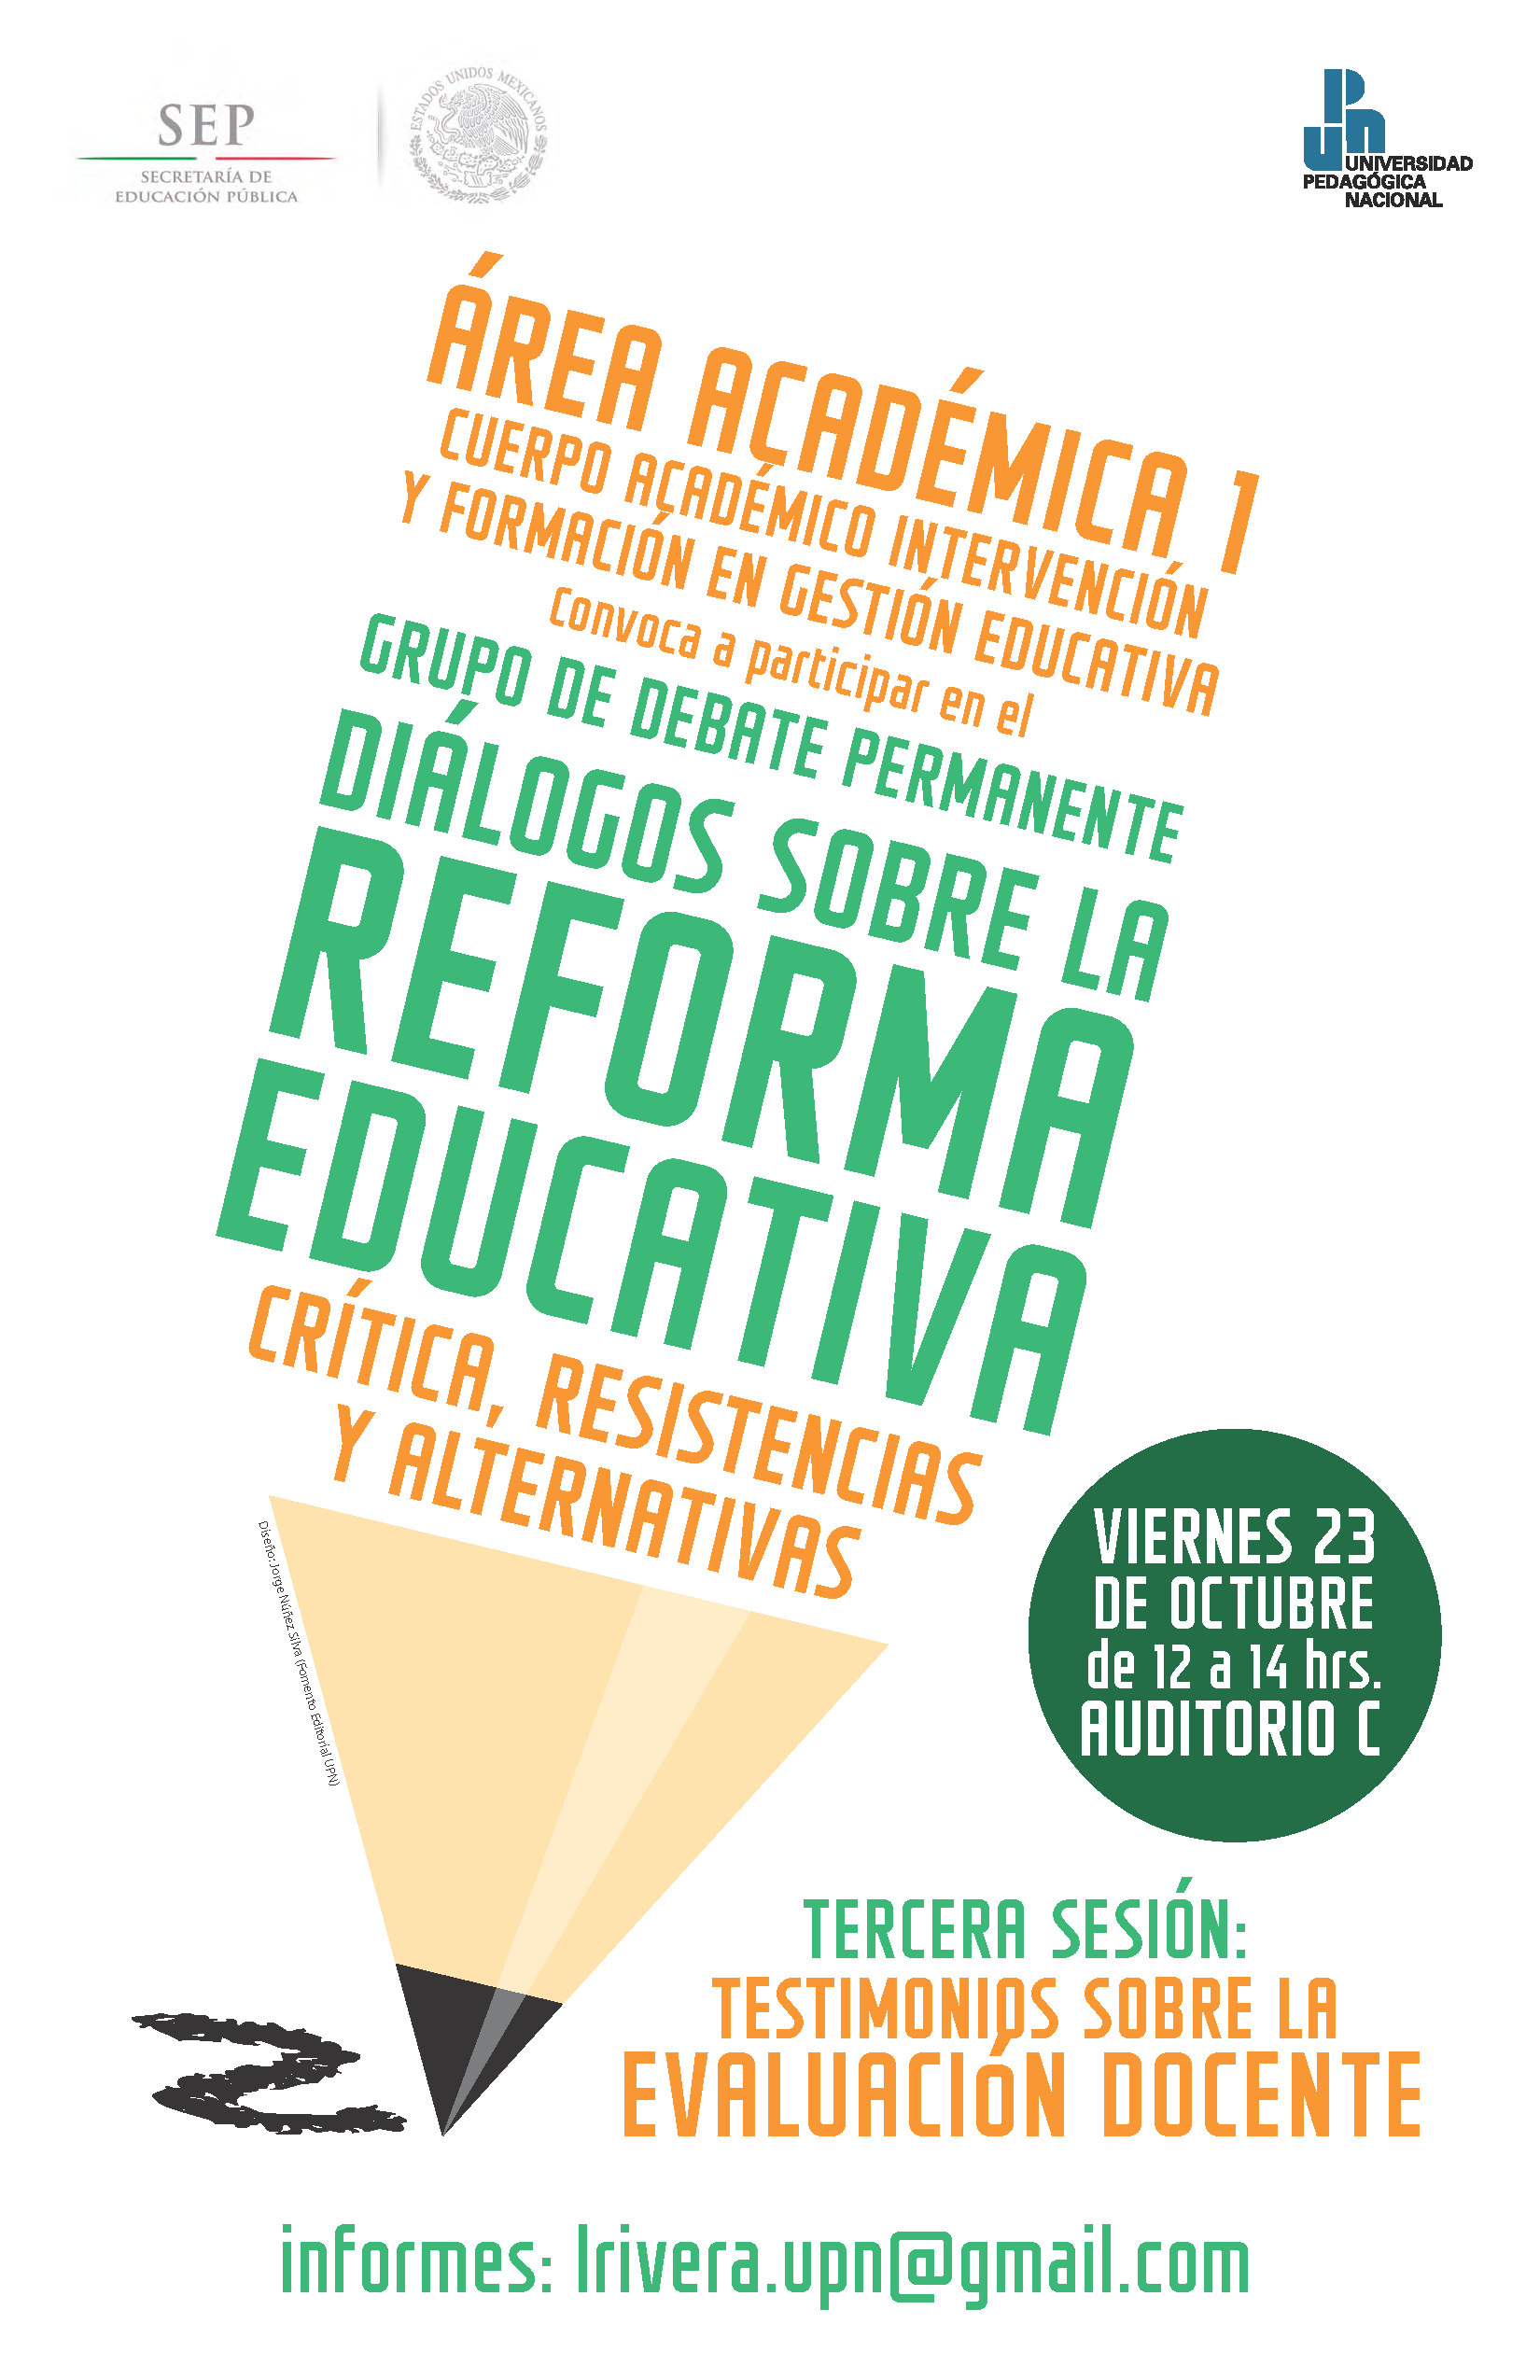 Diálogos sobre la reforma educativa